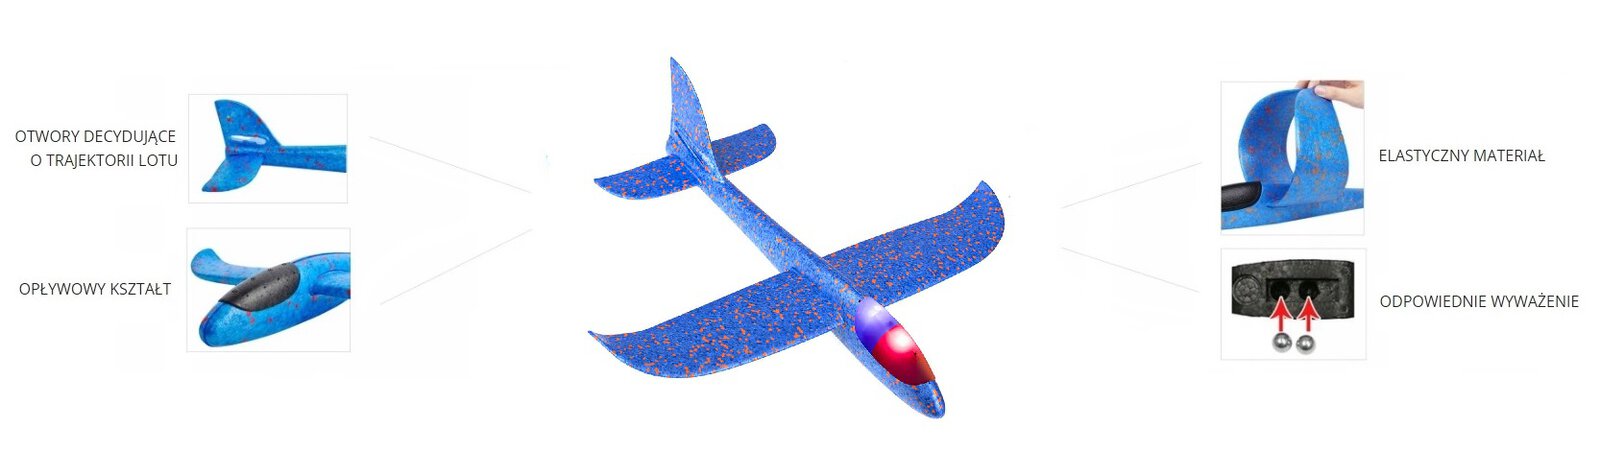 Samolot styropianowy - specyfikacja